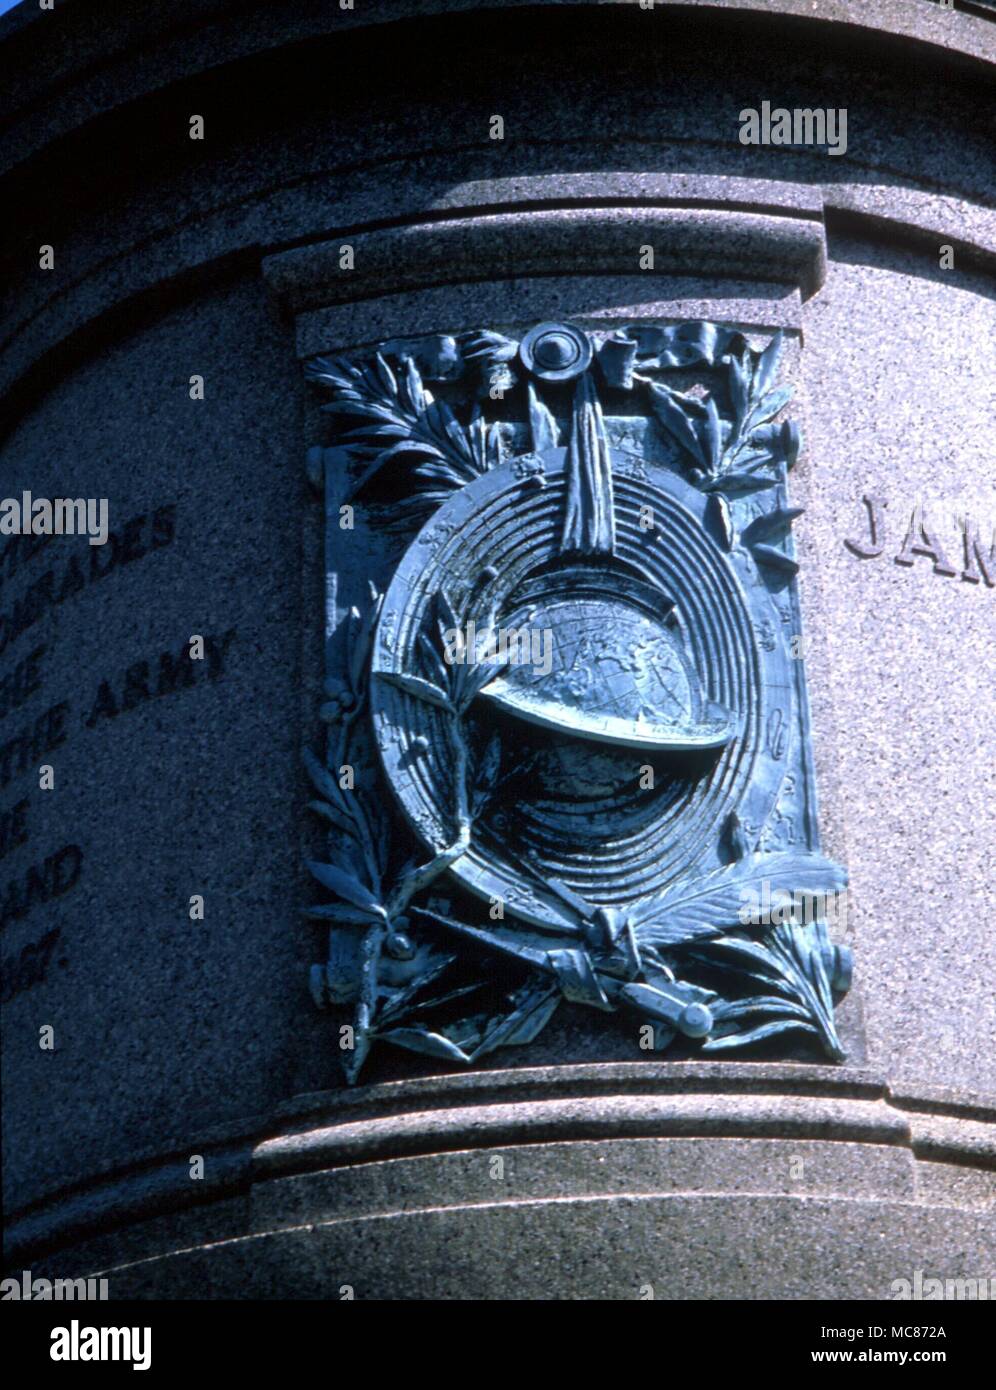 Astrologia - siti astrologici - Washington DC basso rilievo oroscopo personale, impostato entro un geocentrico Ptollemaic grafico sulla Garfield memorial, a sud del Campidoglio Foto Stock